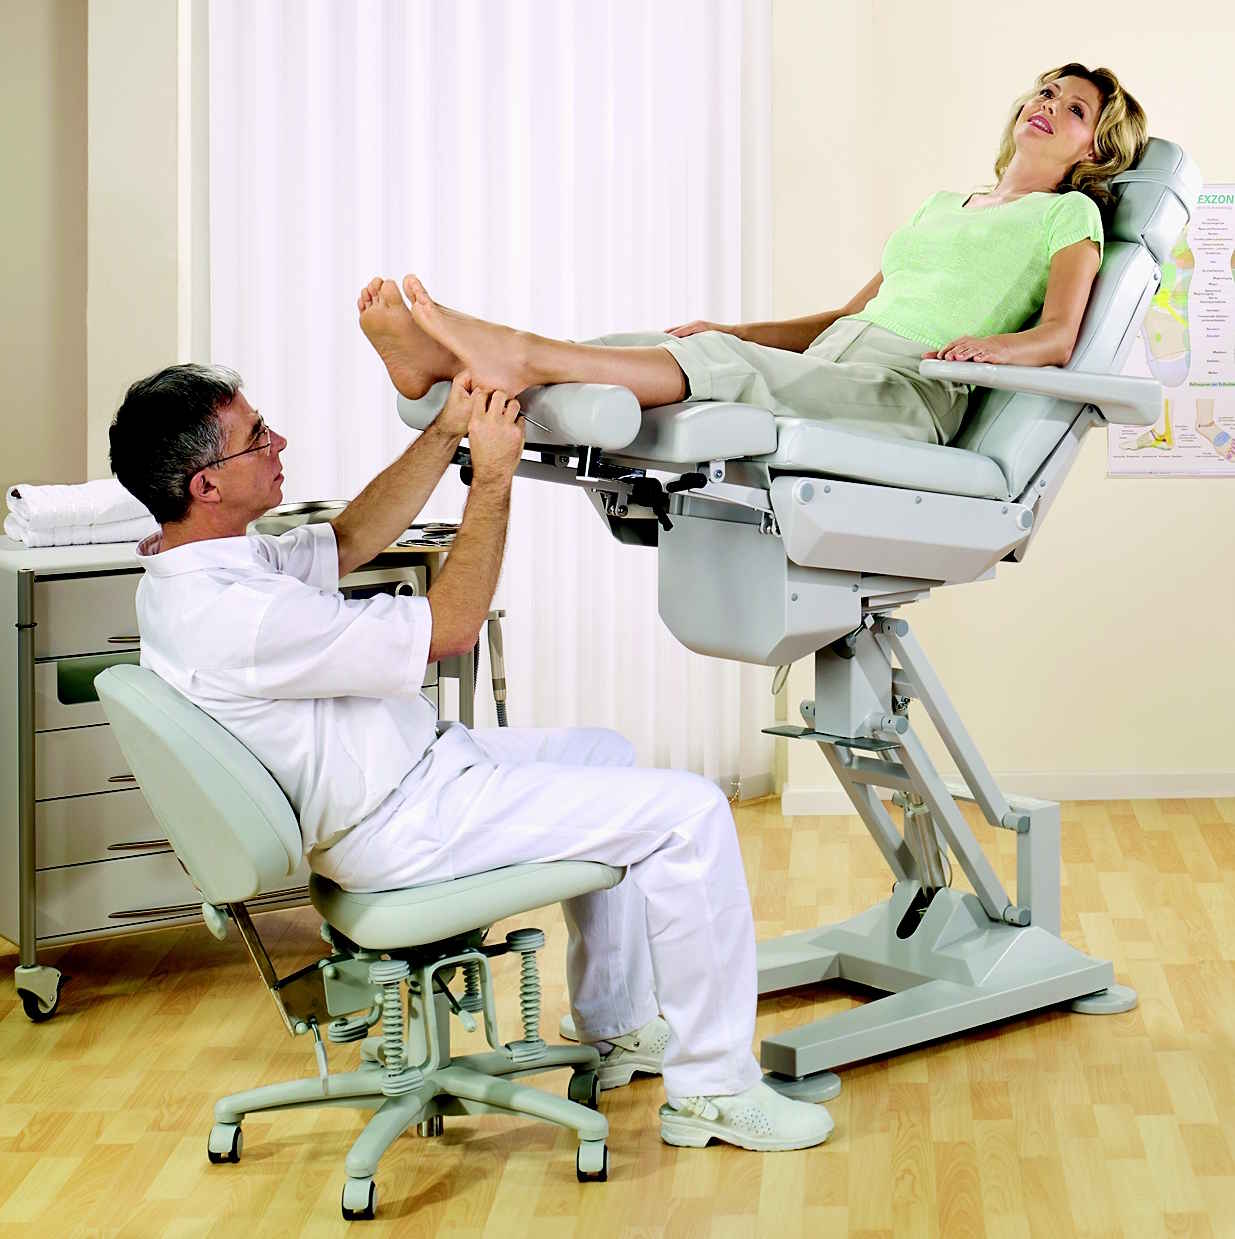 Мужчина пришел к гинекологу. 151540 Кресло гинекологическое. Гинекологическое кресло Зерц. Кресло проктолога. Осмотр гинеколога на кресле.